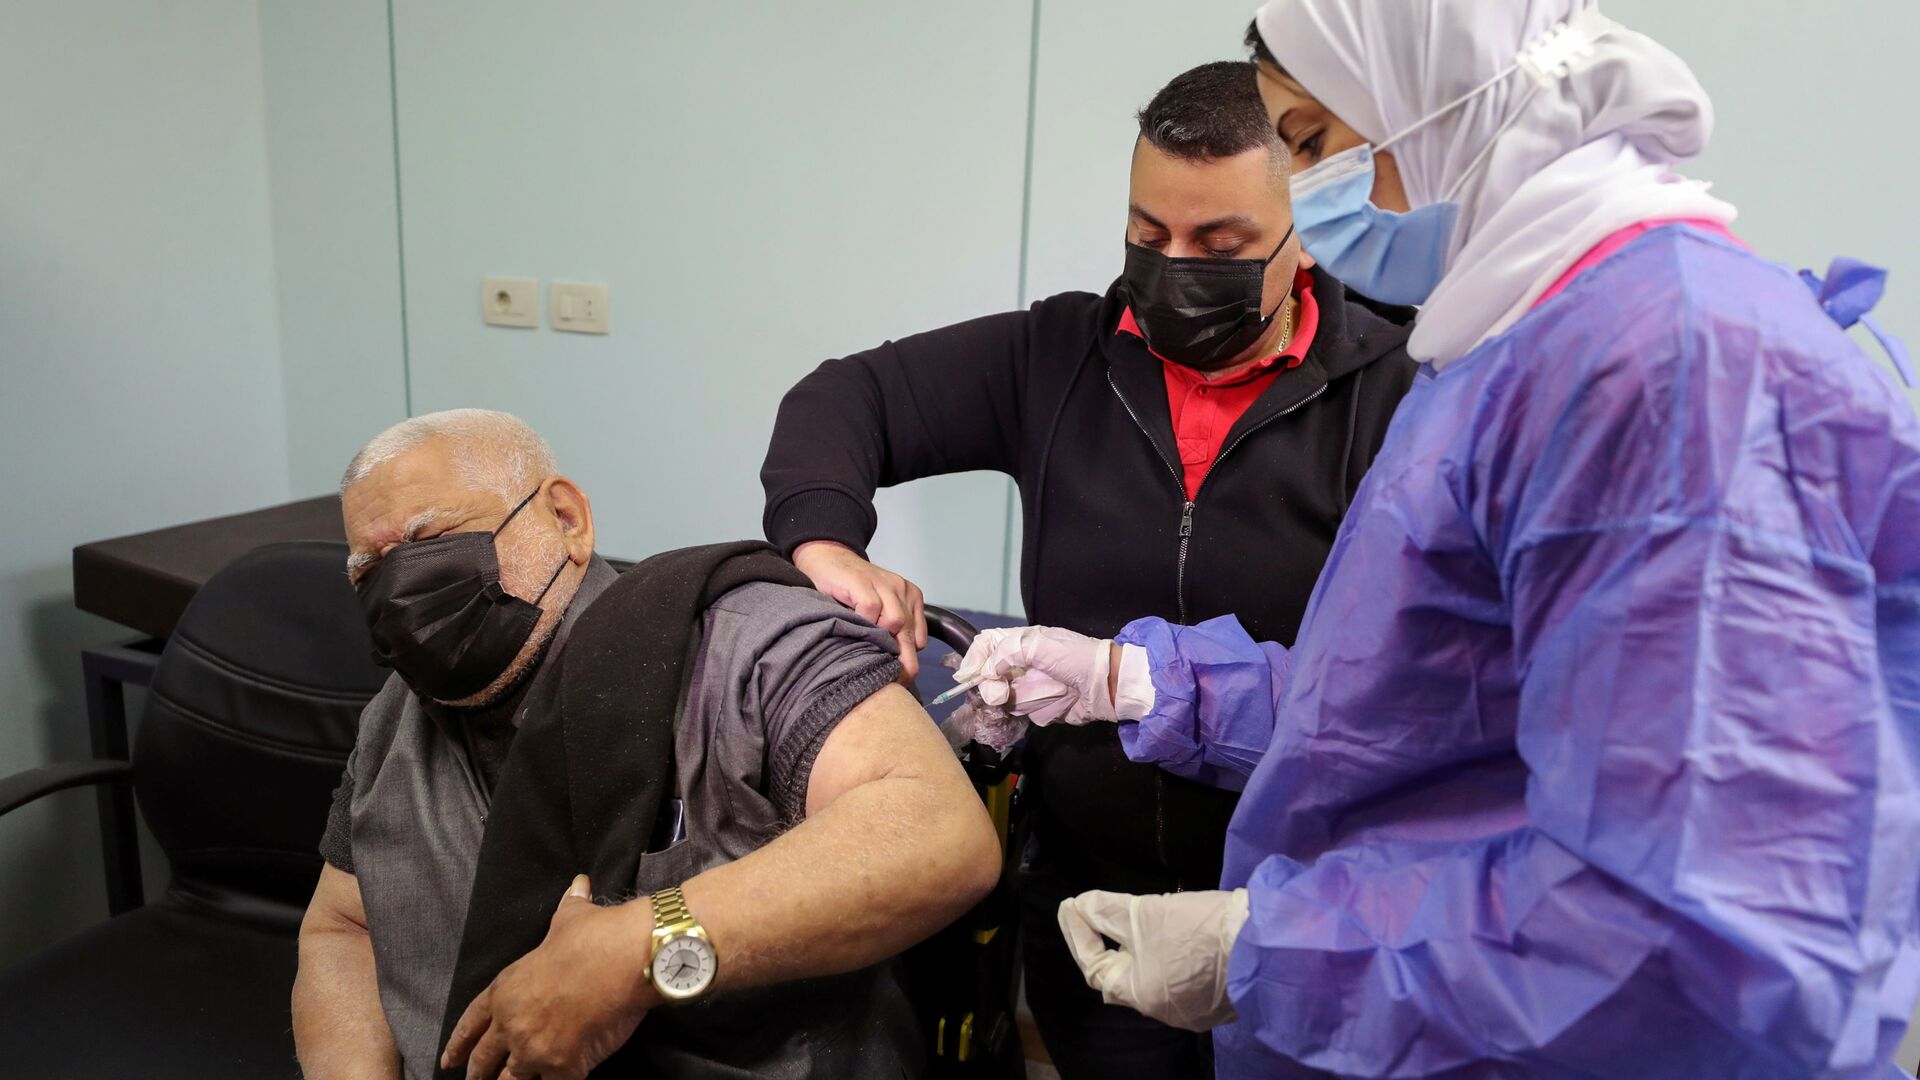  بدء تطعيم واسع النطاق في مصر ضد فيروس كورونا (كوفيد-19)، القاهرة، 4 مارس 2021 - سبوتنيك عربي, 1920, 26.11.2021